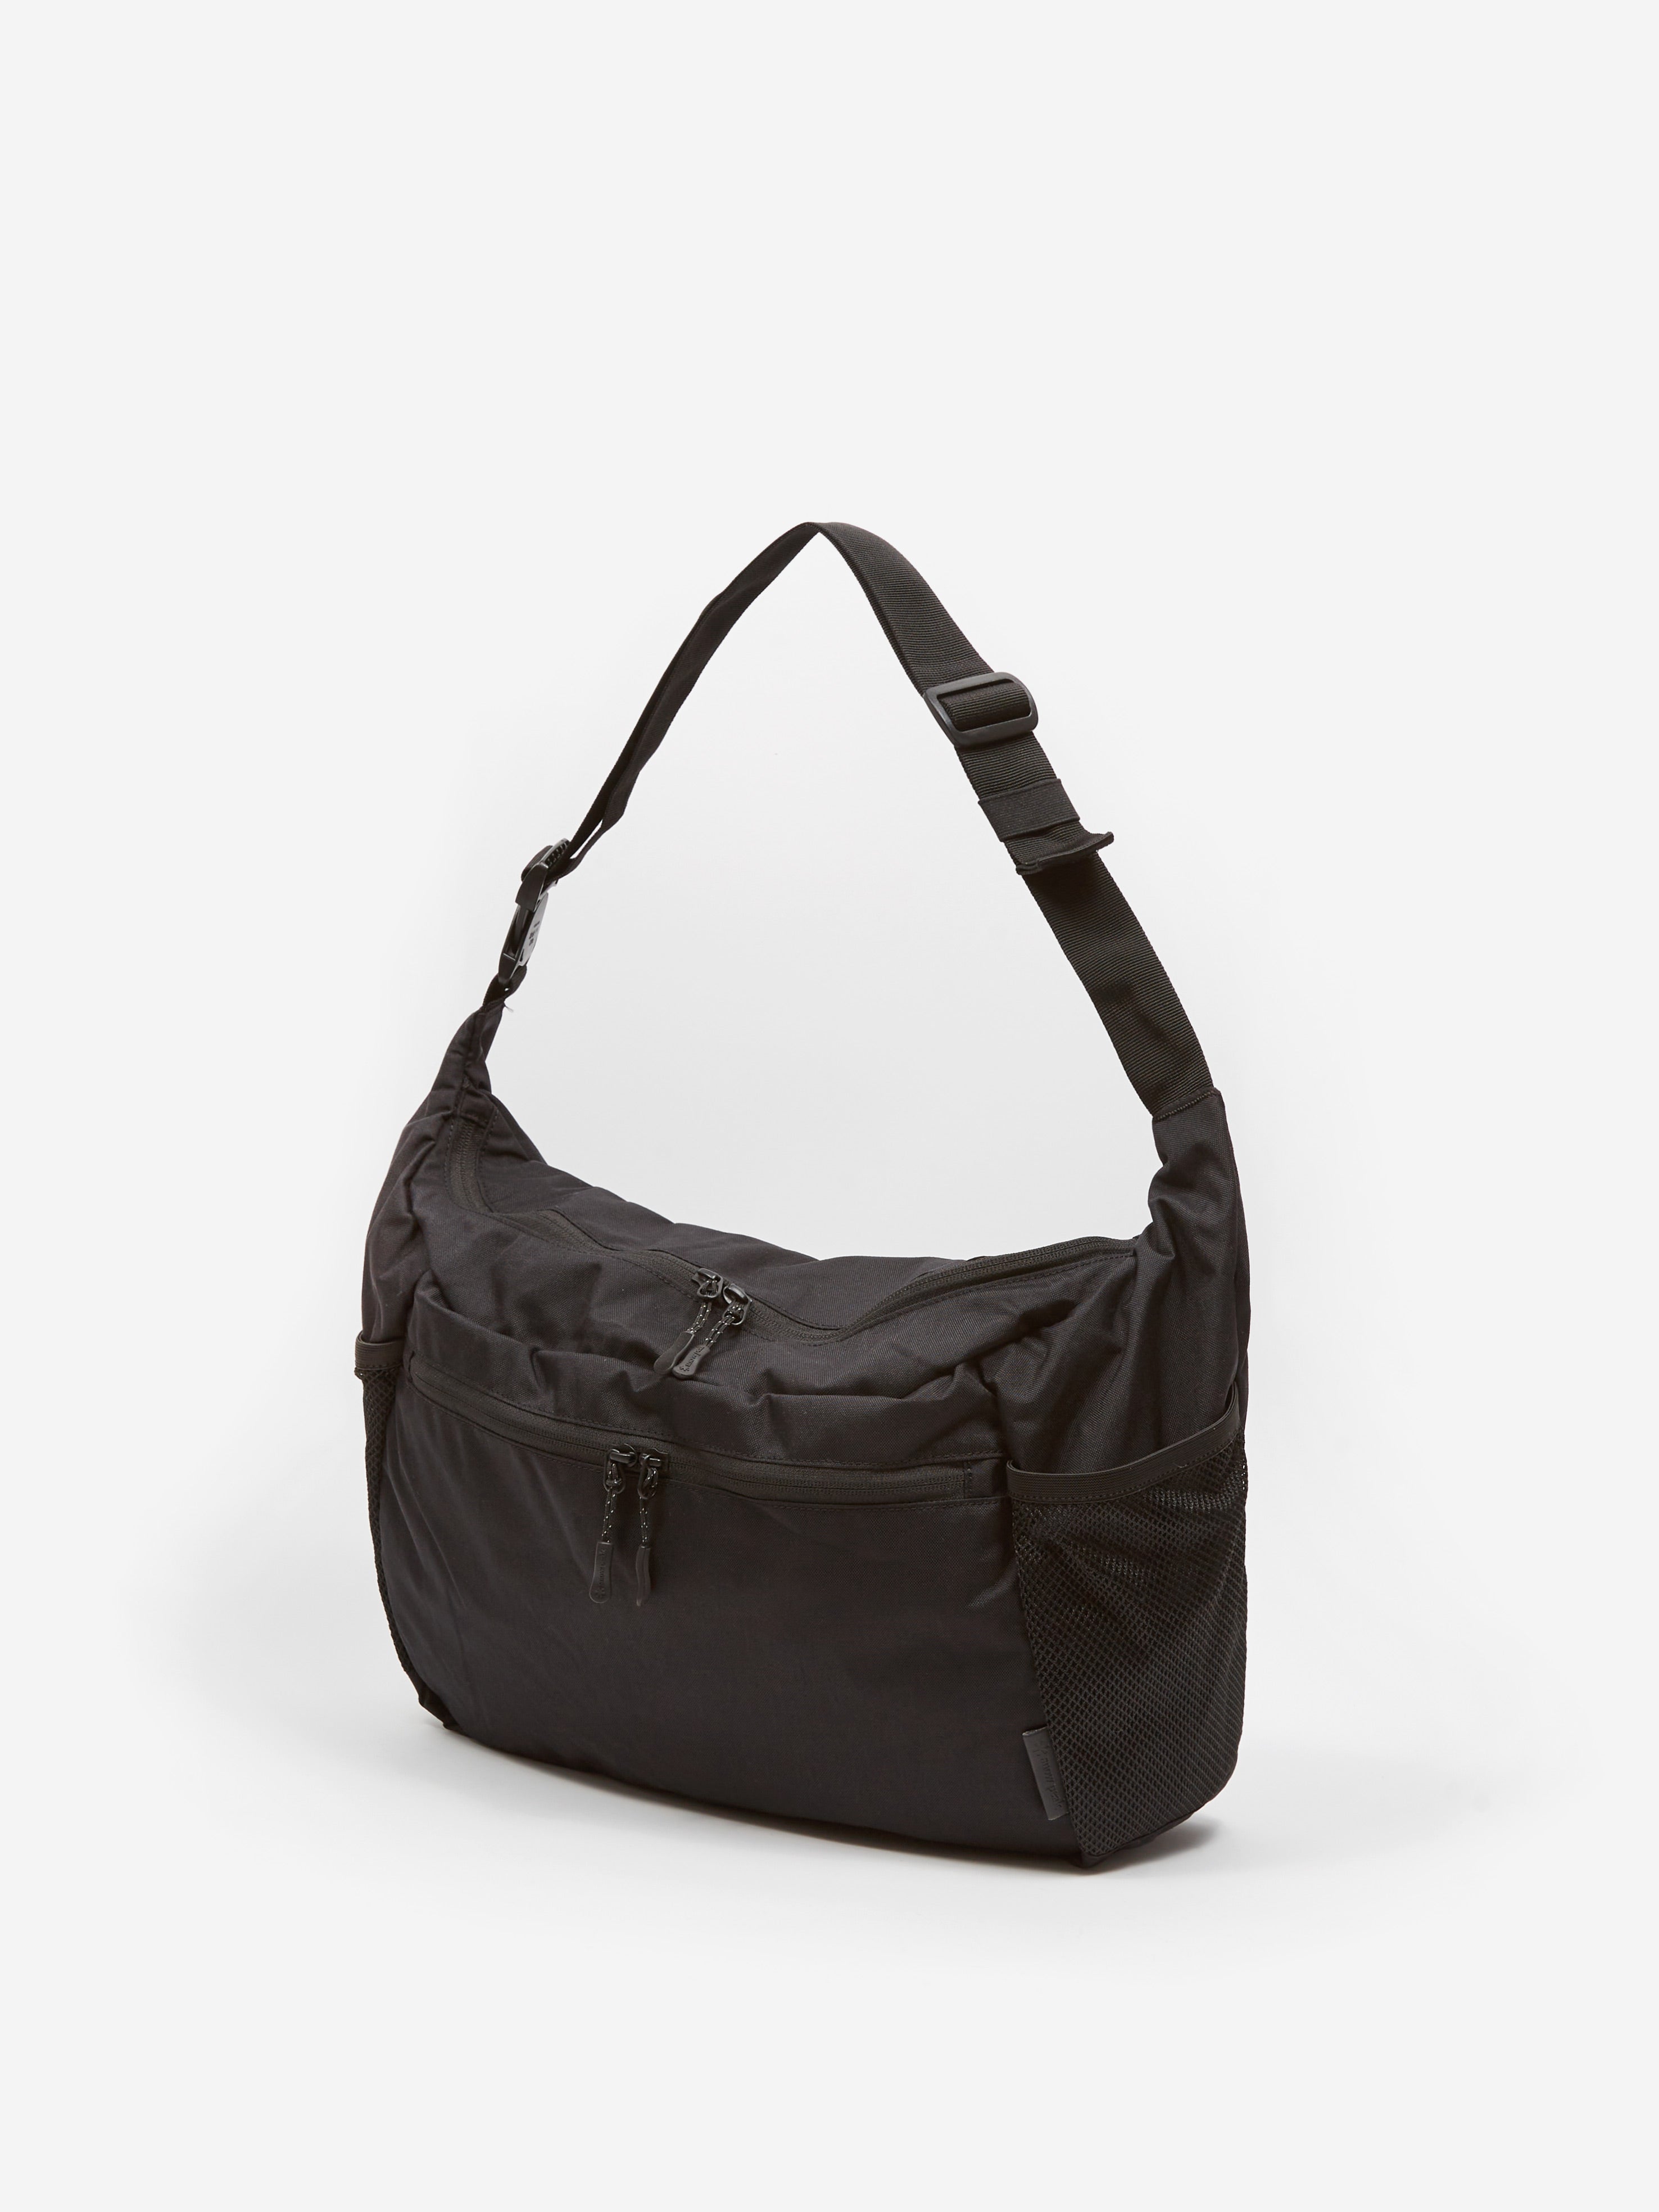 Snow Peak Everyday Use Middle Shoulder Bag - Black – Goodhood